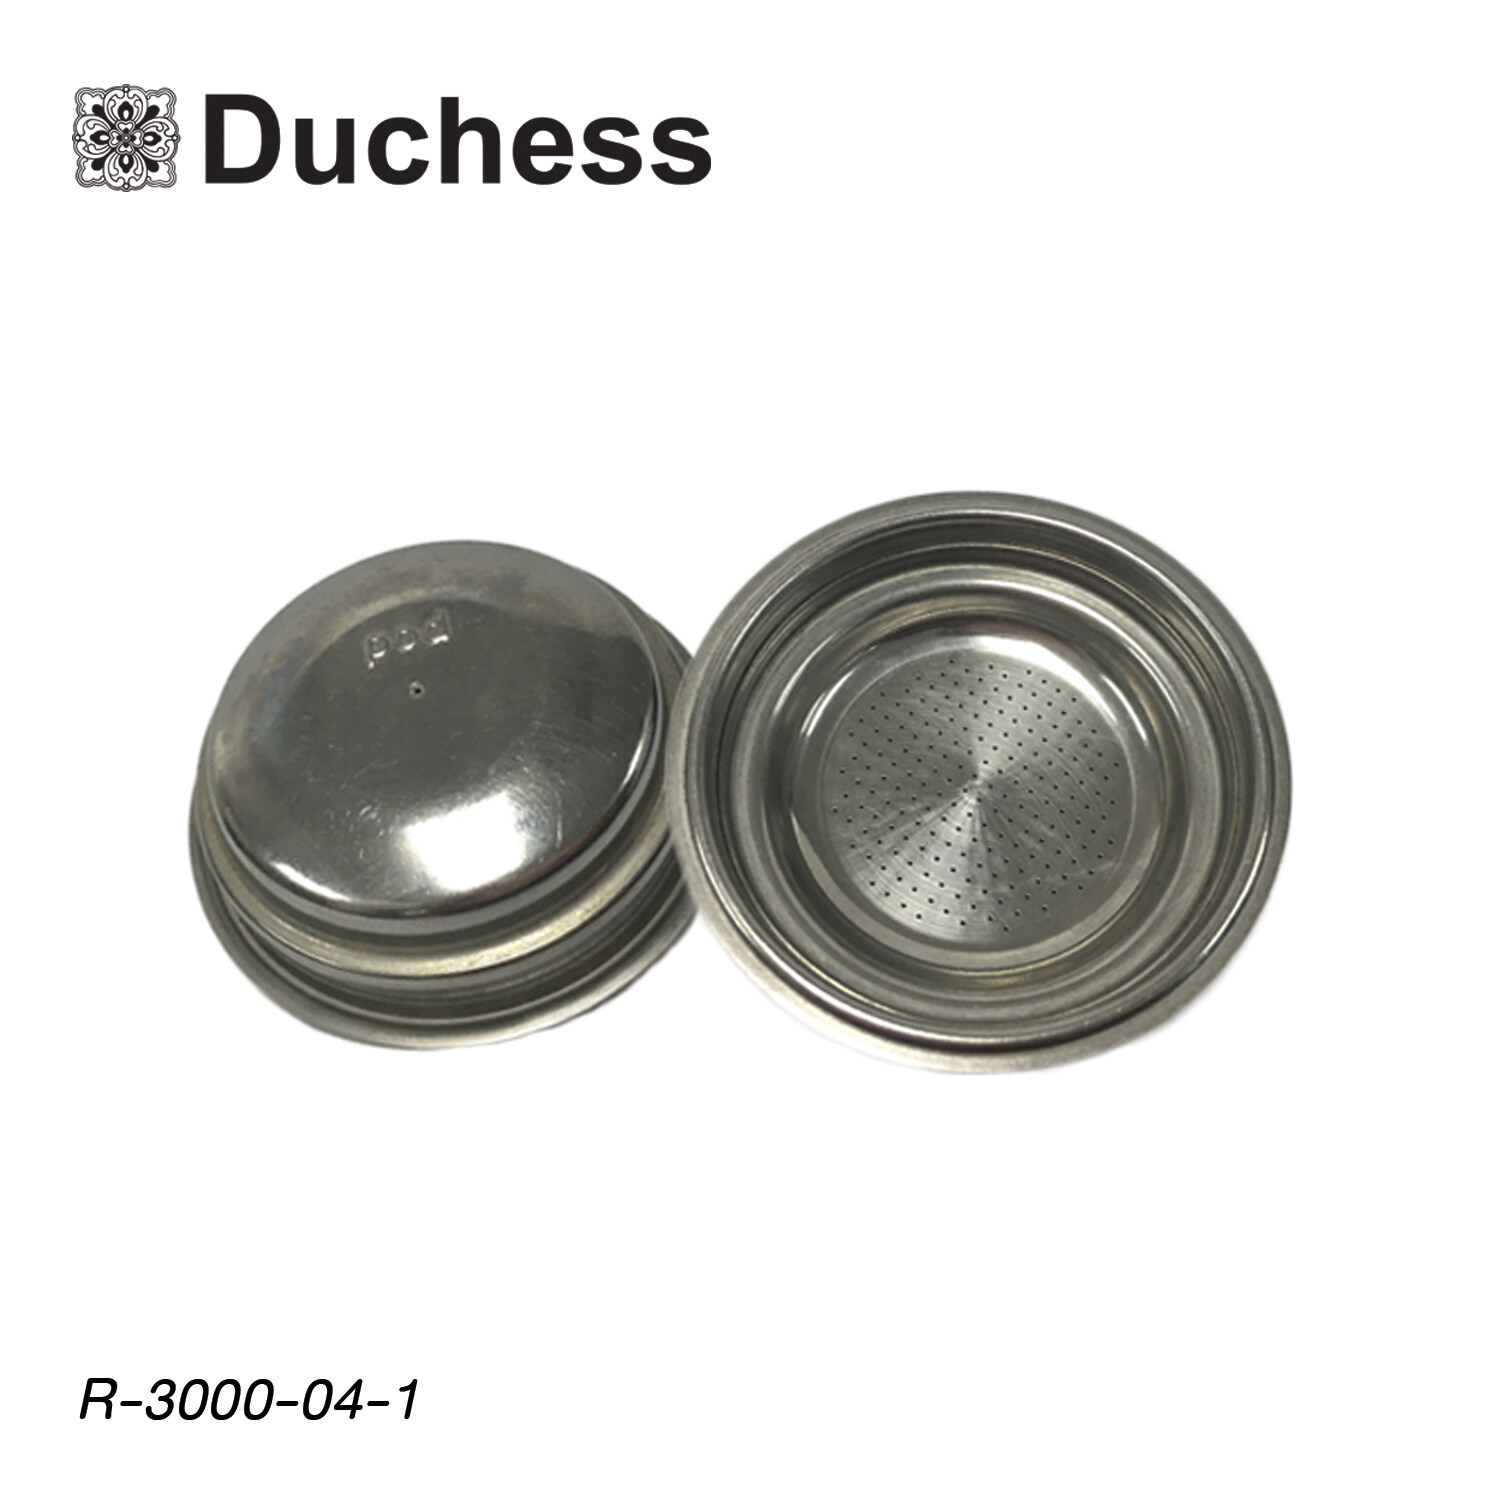 Duchess ถ้วยกรองกาแฟ ขนาด 1 ช็อต (สำหรับเครื่องชงกาแฟ Duchess รุ่น CM3000) - R-3000-04-1